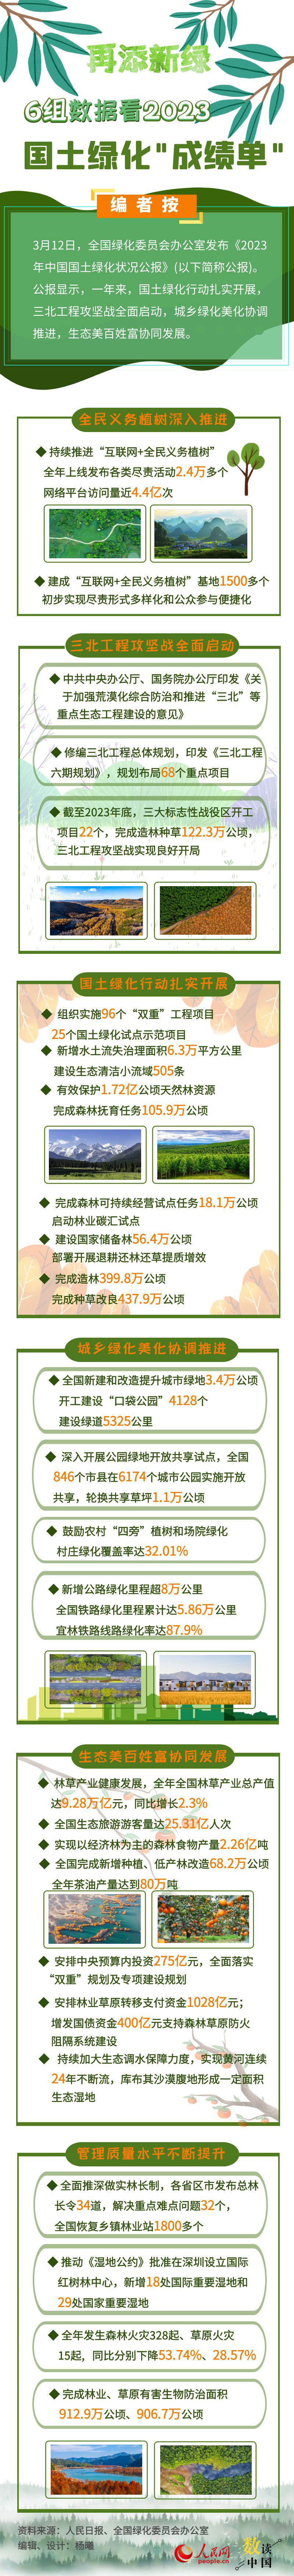 数读中国 | 再添新绿 6组数据看国土绿化“成绩单”